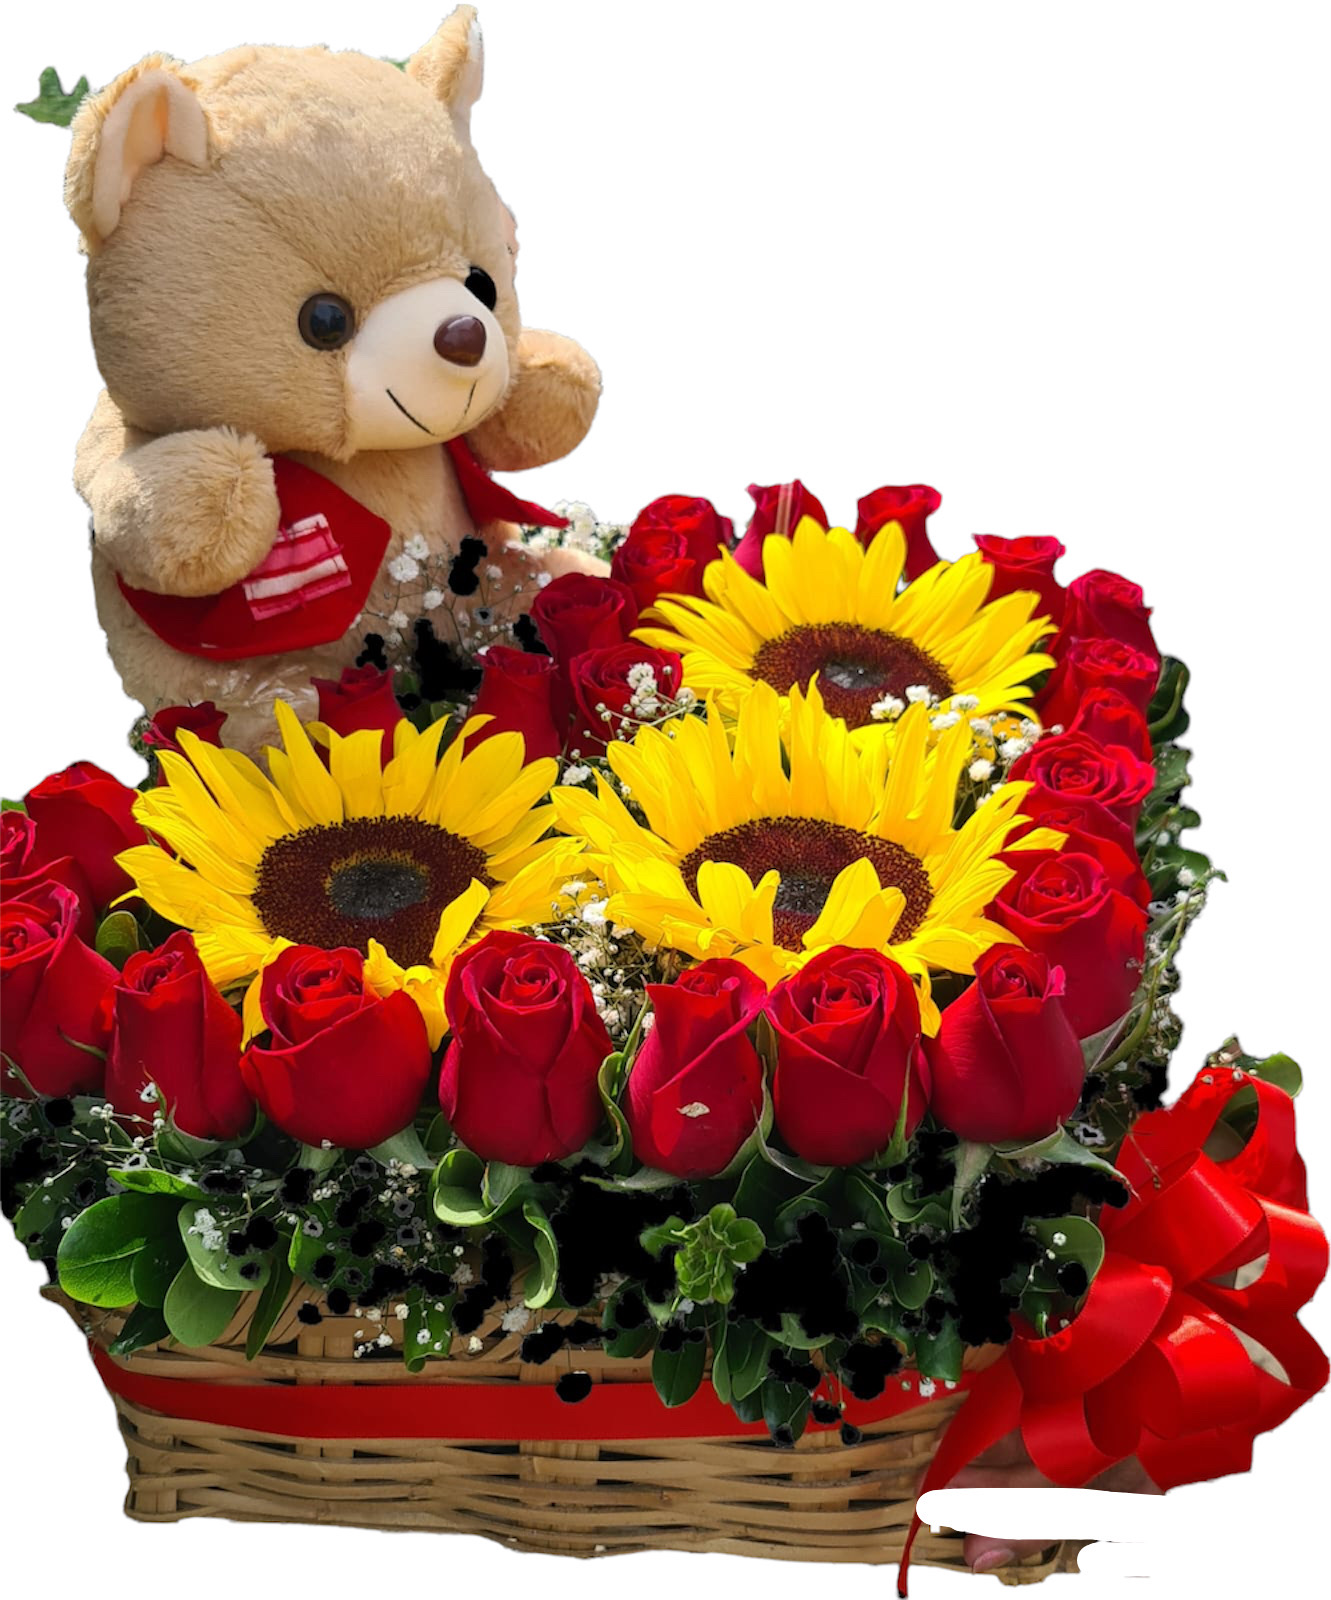 Canasta cuadrada con rosas rojas dispuestas en forma de corazón y girasoles en centro con tierno oso de peluche.